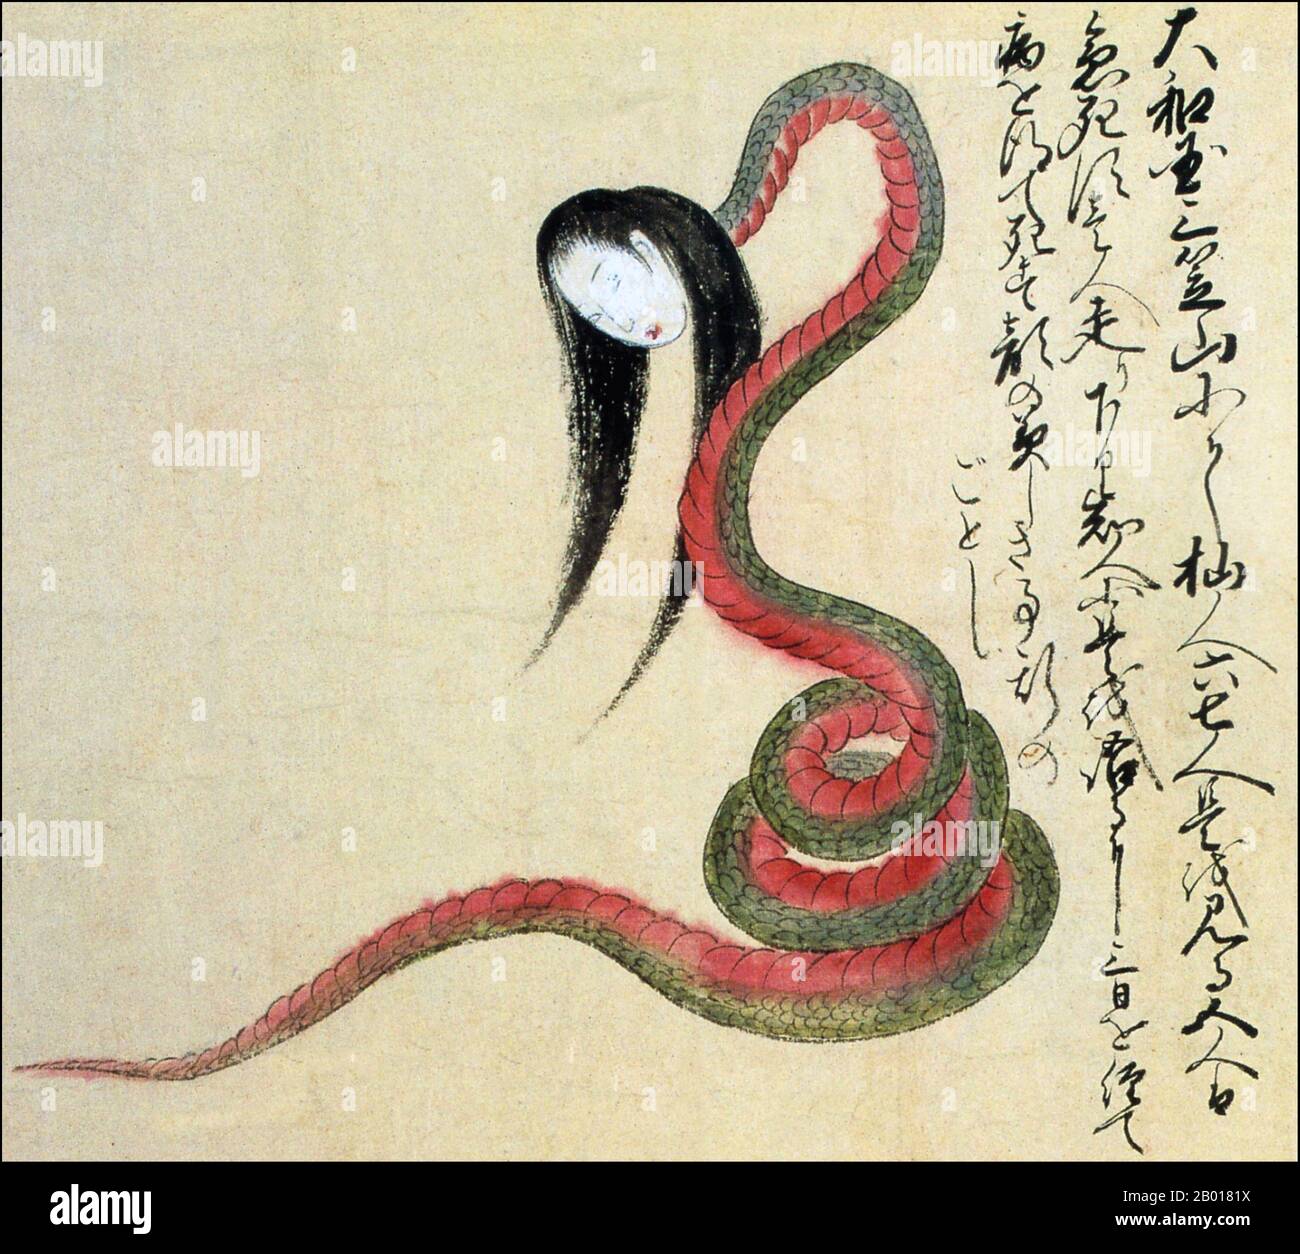 Japan: Die 'Snake Woman' von Nara. Aus der Kaikidan Ekotoba Monsterrolle, Mitte 19th. Jahrhundert. Die hier abgebildete Schlangenfrau wurde Berichten zufolge von sechs Personen auf Mt. Mikasa in der Präfektur Nara. Fünf der Augenzeugen starben sofort. Die sechste Person überlebte lange genug, um nach Hause zu kommen und die Geschichte zu erzählen, aber er wurde krank und starb drei Tage später. Die Schlangenfrau ähnelt der berüchtigten nure-onna, außer dass diese ein schönes Gesicht hat. Der Kaikidan Ekotoba ist eine Handscroll aus der Mitte des 19th. Jahrhunderts, die 33 legendäre Monster und menschliche Merkwürdigkeiten, vor allem aus der Kyushu-Region, zeigt. Stockfoto